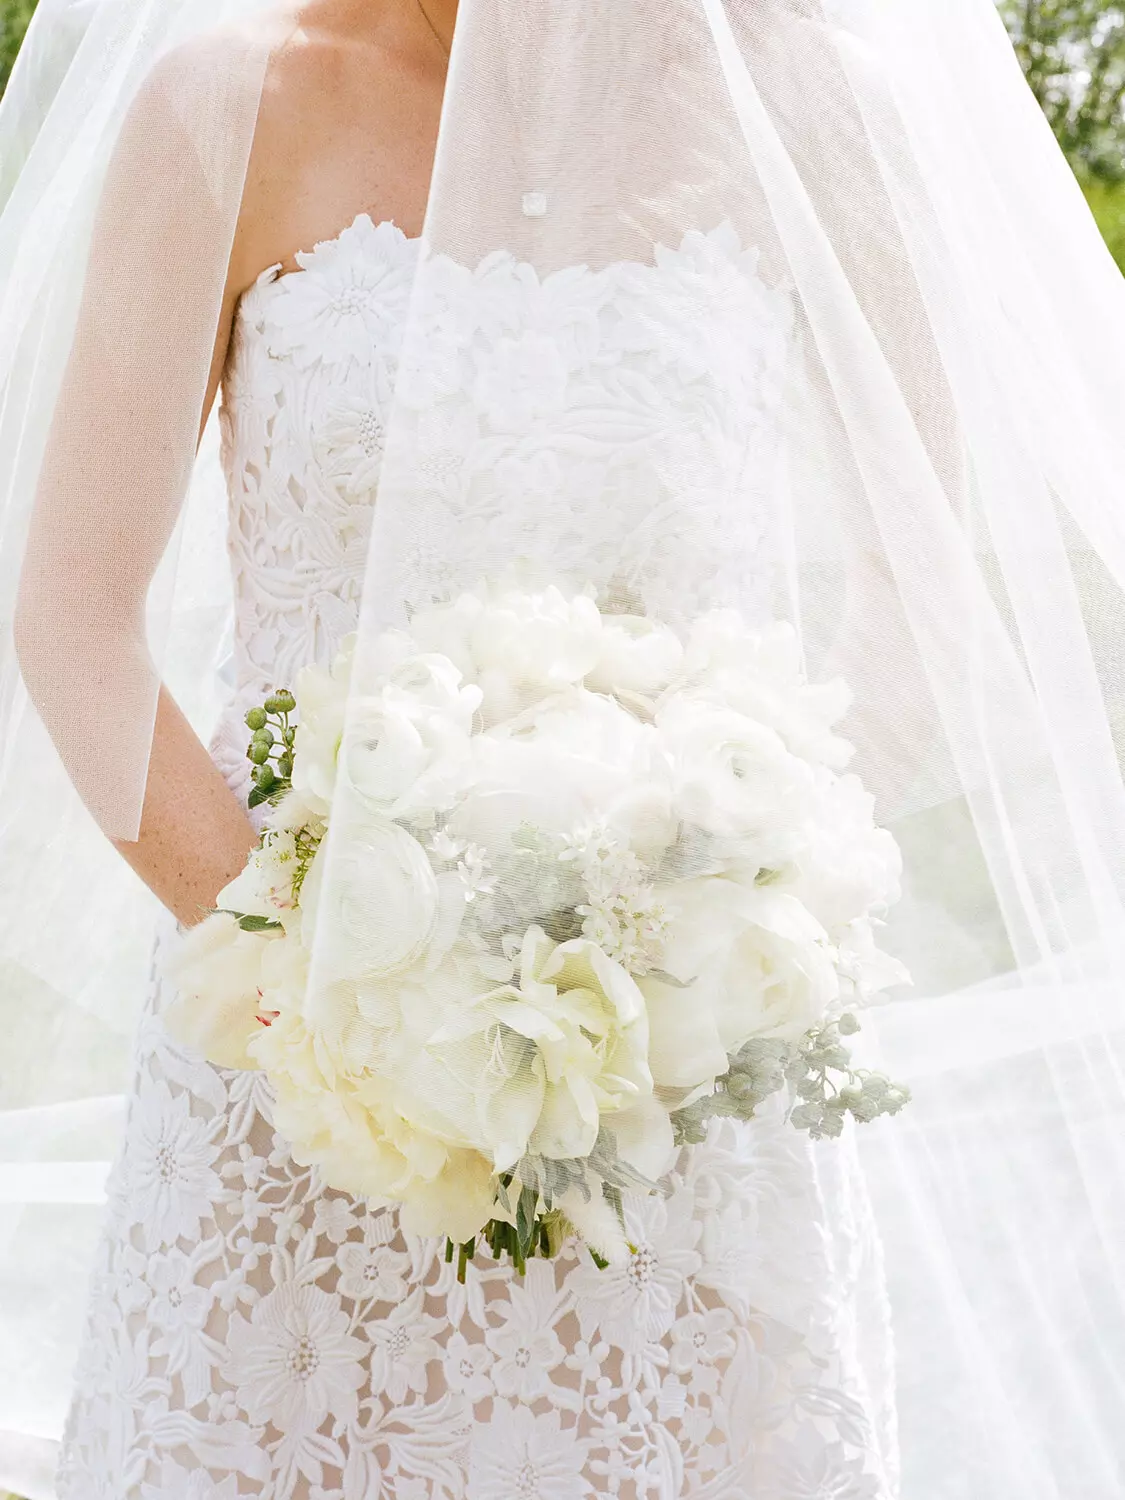 The Stylish Bride bridal photoshoot